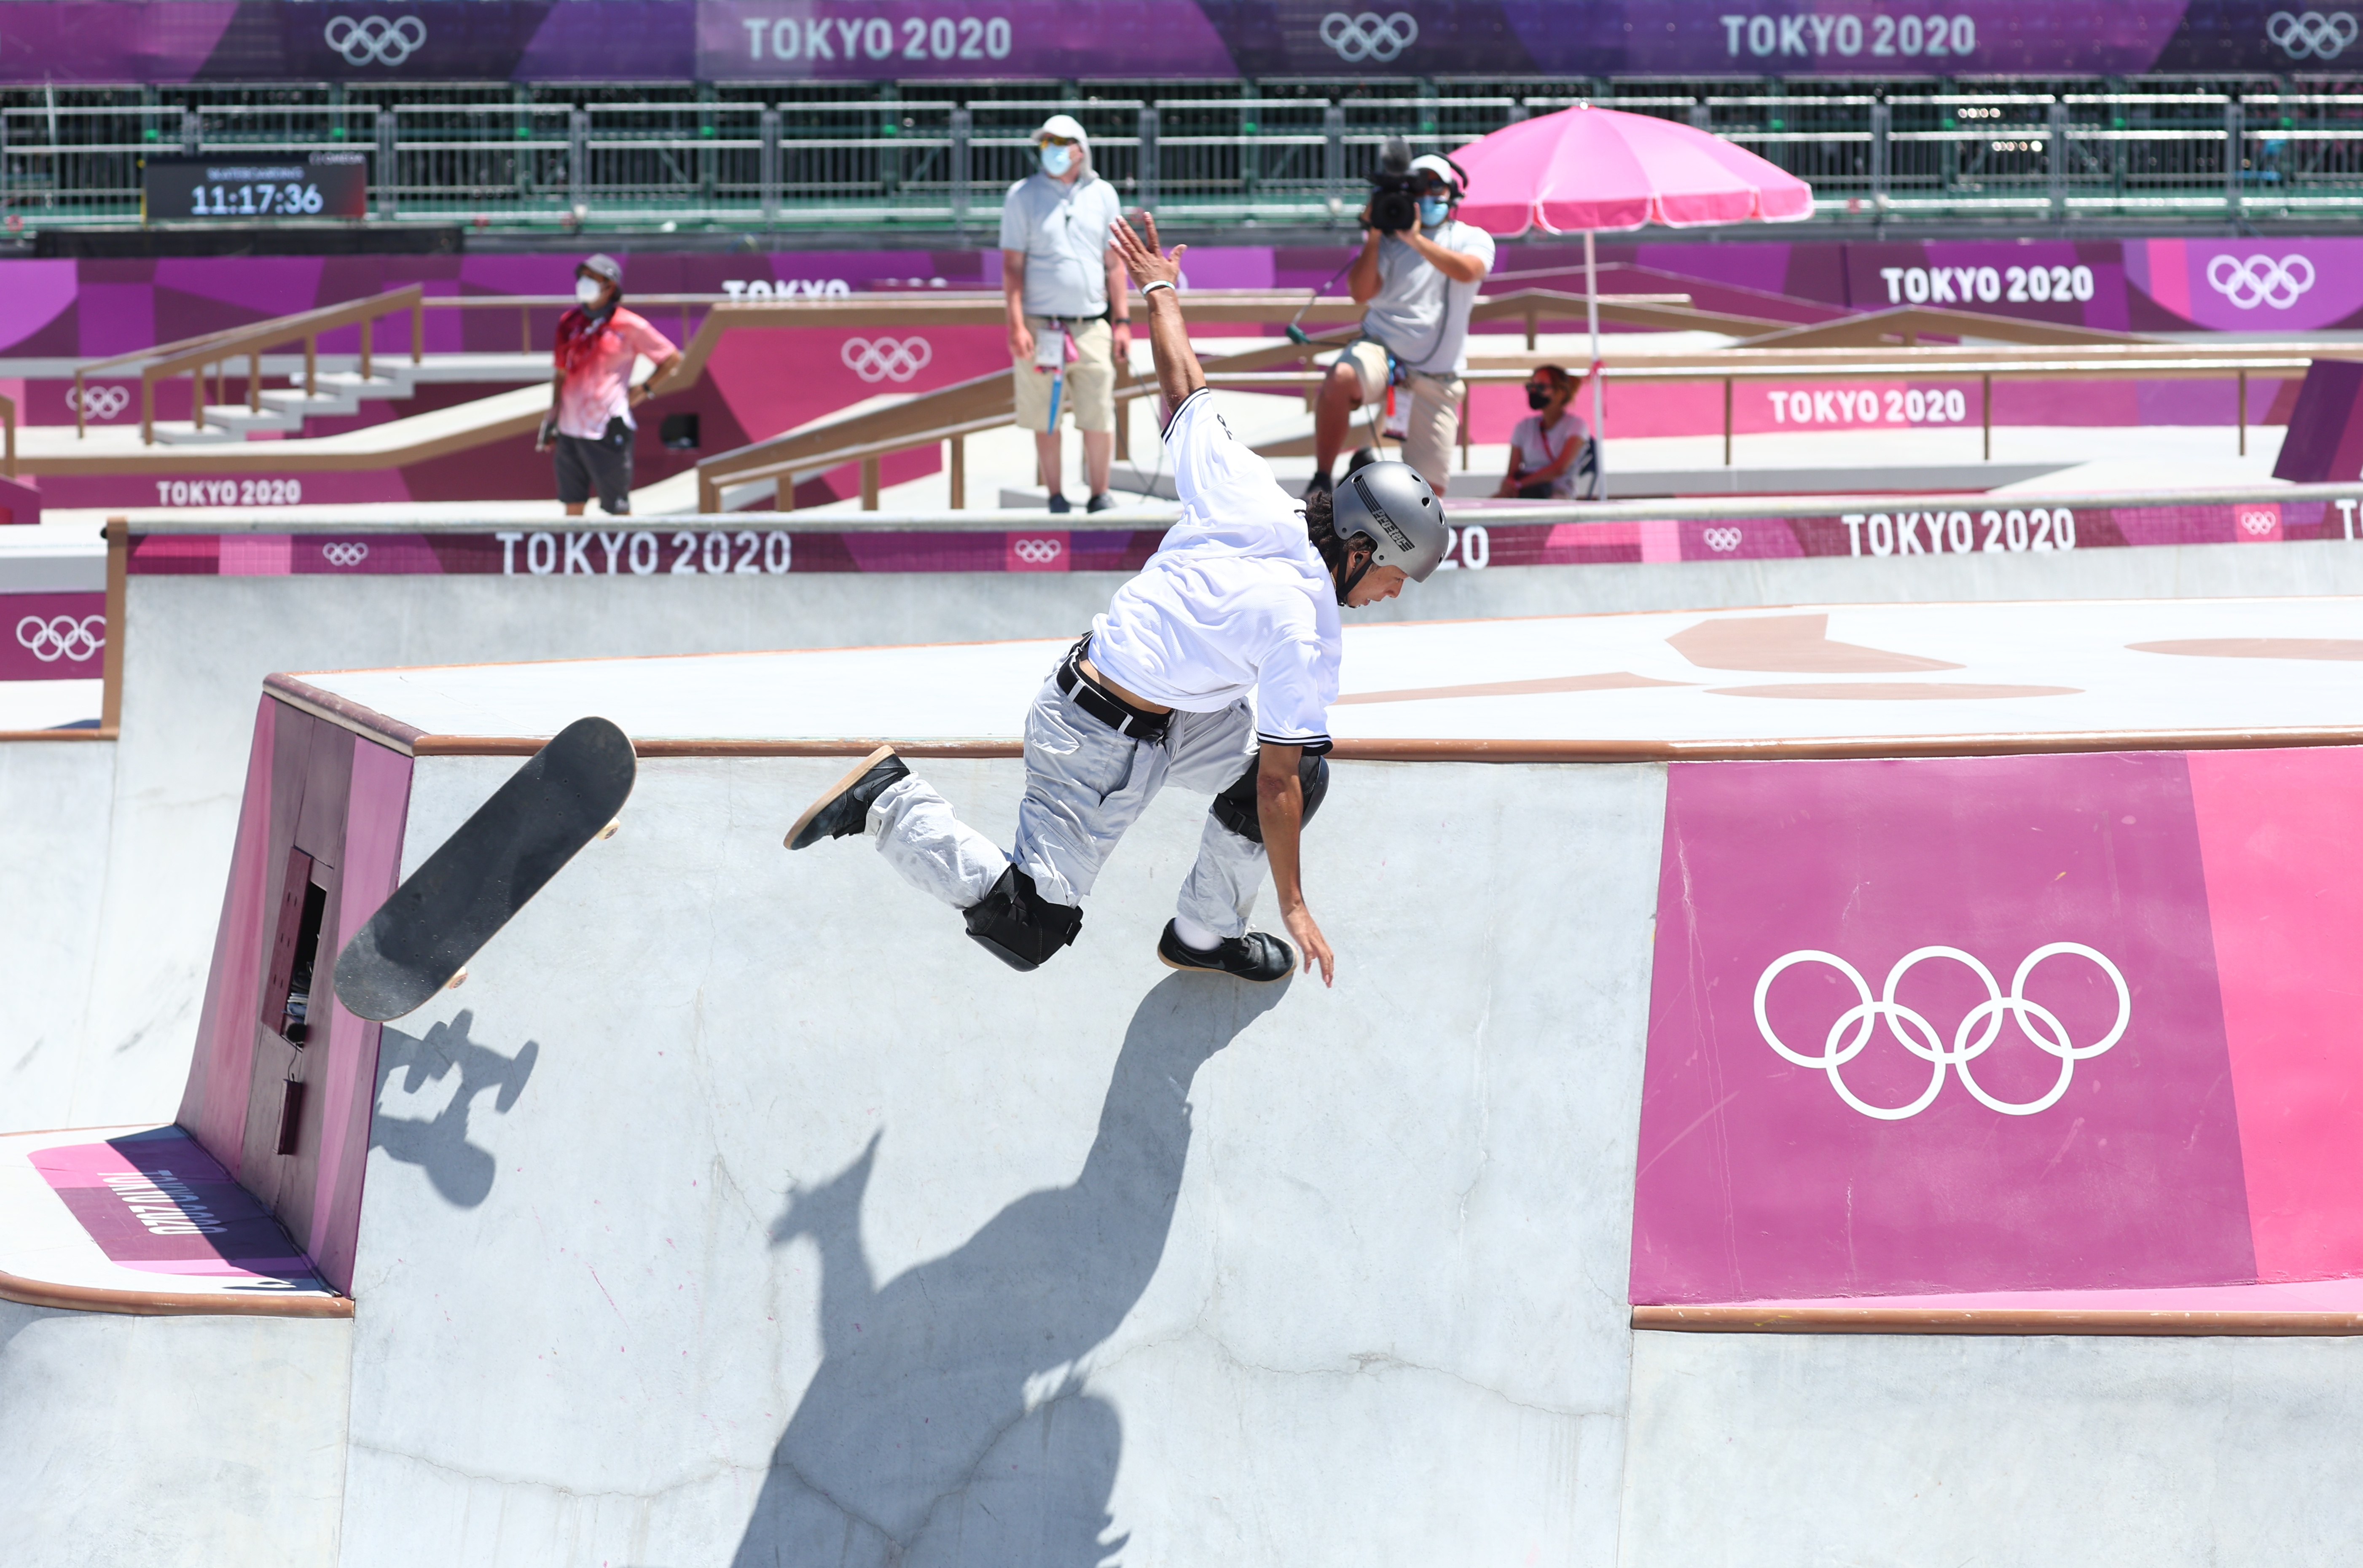 El japonés Ayumu Hirano tuvo una caída en su prueba de skateboarding.